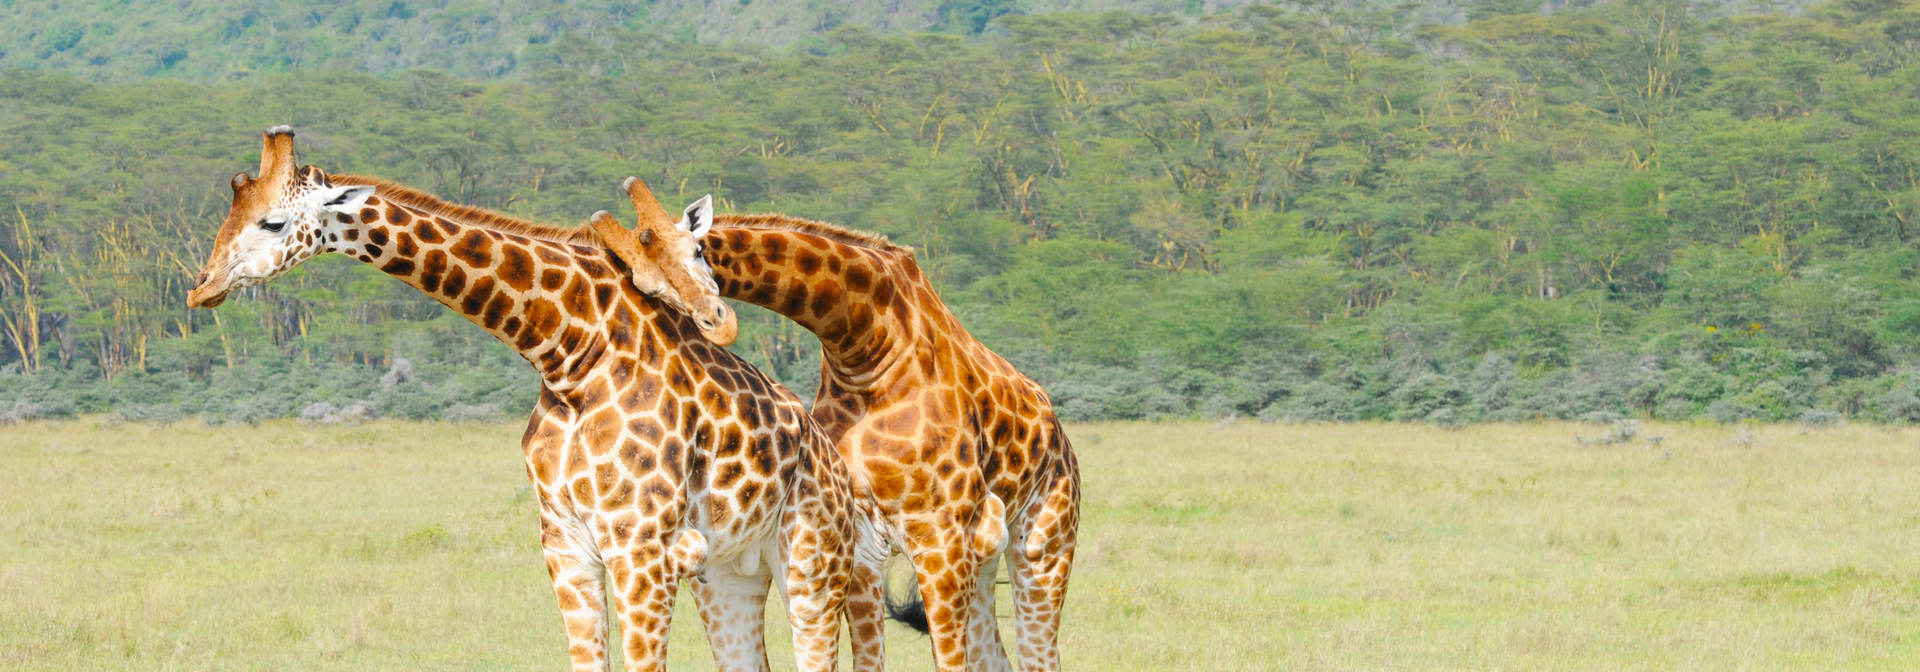 sydafrika - sydafrika_natur_giraf_03